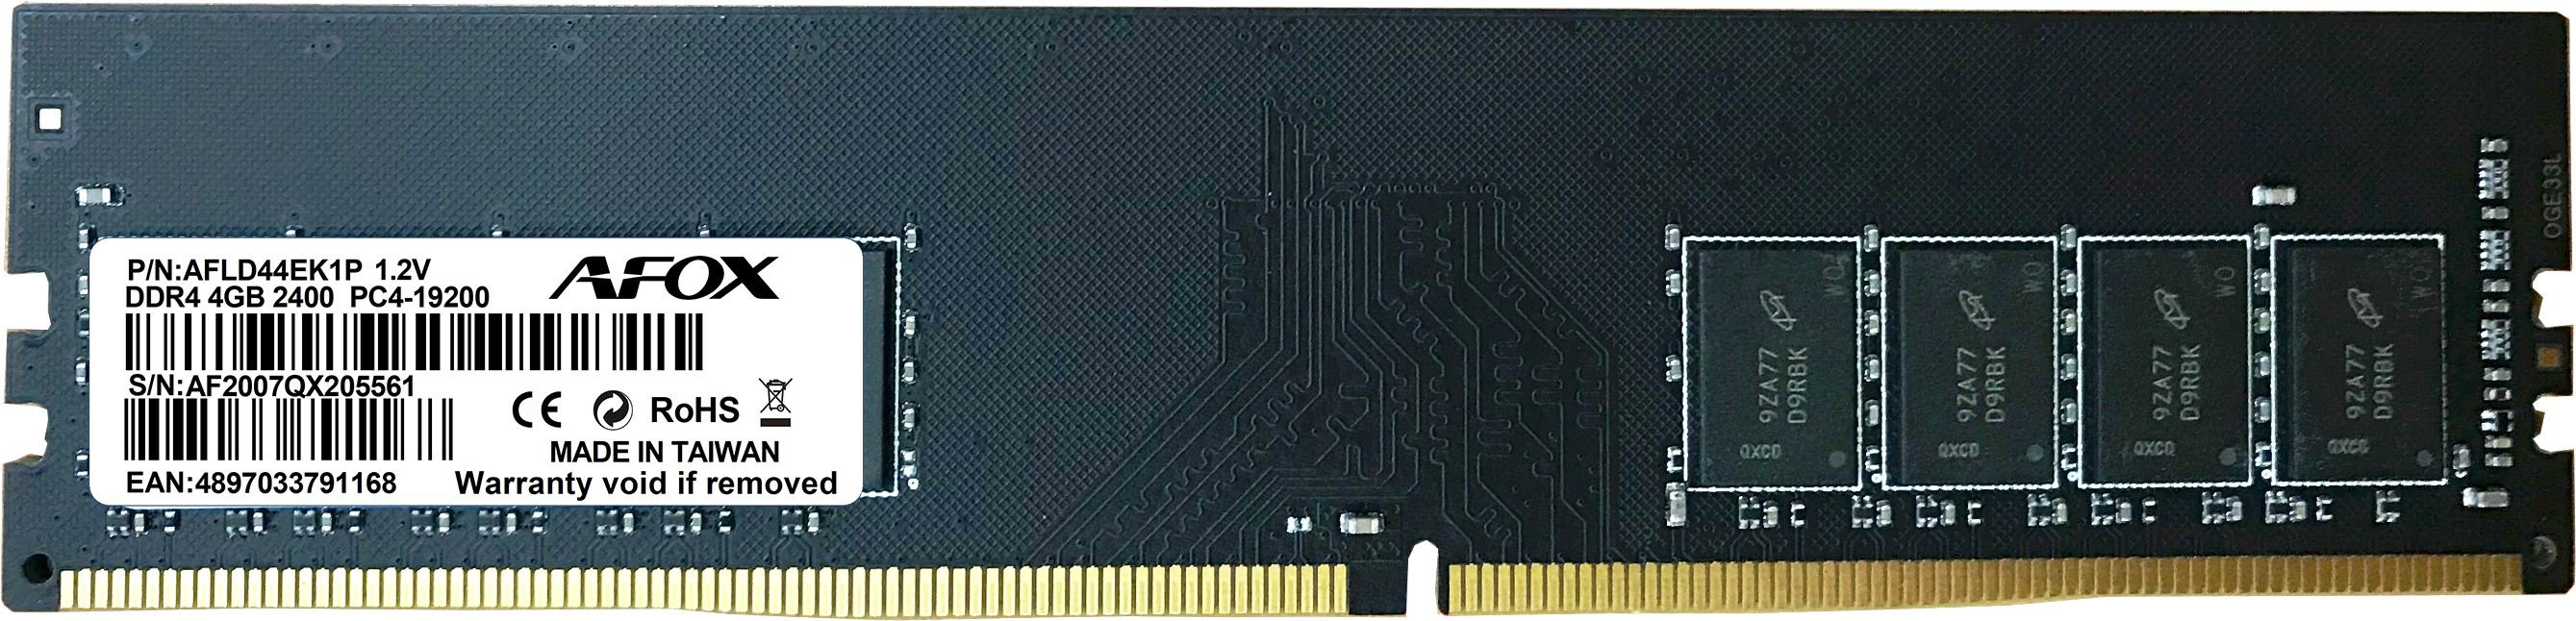 AFOX AFLD44EK1P 4GB 2400Mhz DDR4 MICRON CHIPS RAM